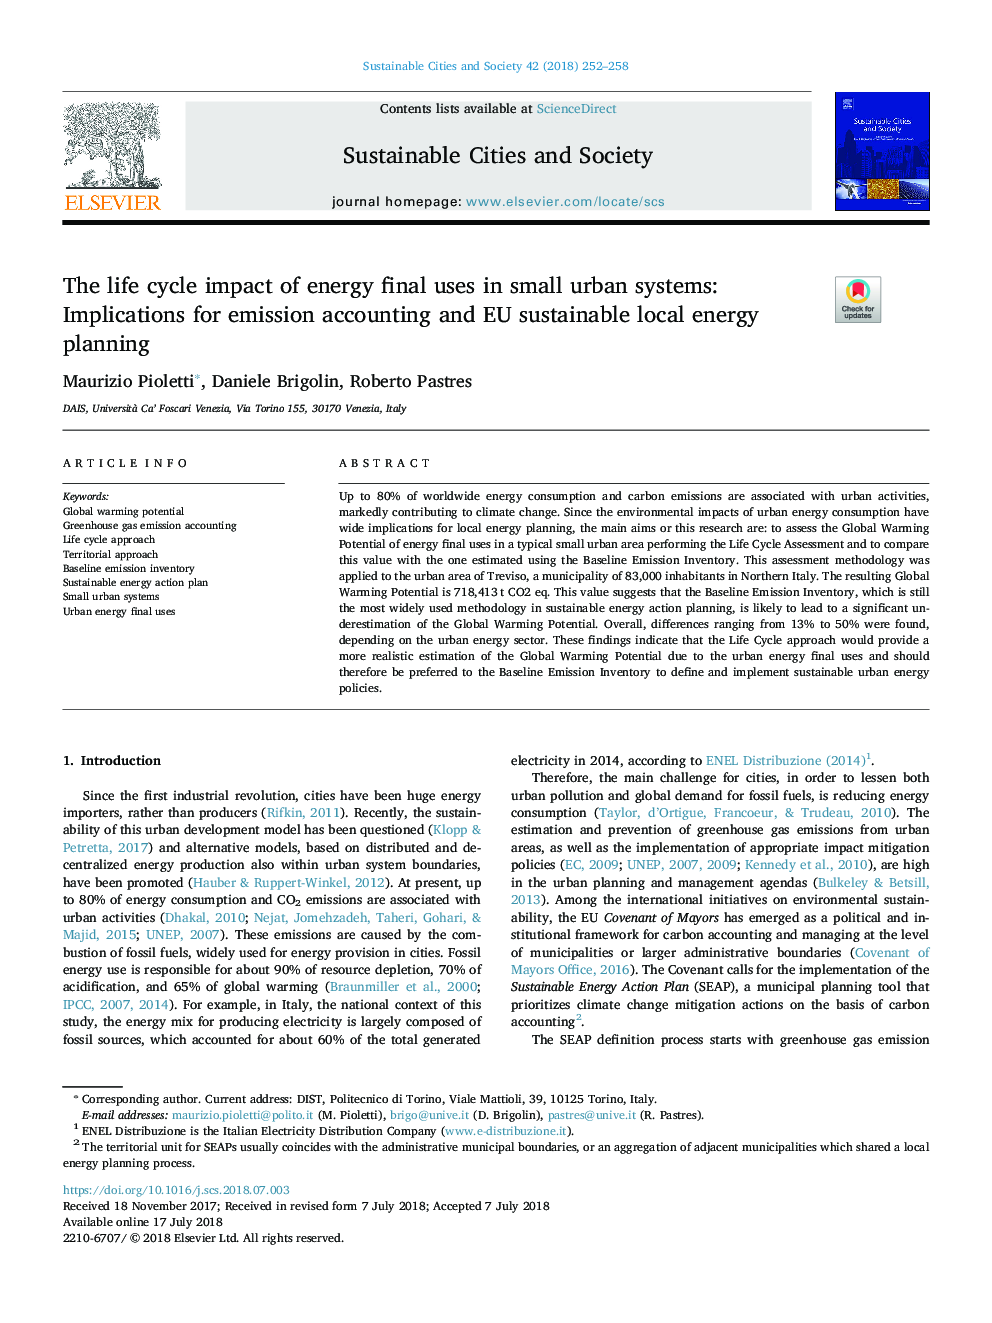 تأثیر چرخه عمر مصرف نهایی انرژی در سیستم های کوچک شهری: پیامدهای حسابداری انتشار و برنامه ریزی انرژی محلی اتحادیه اروپا 